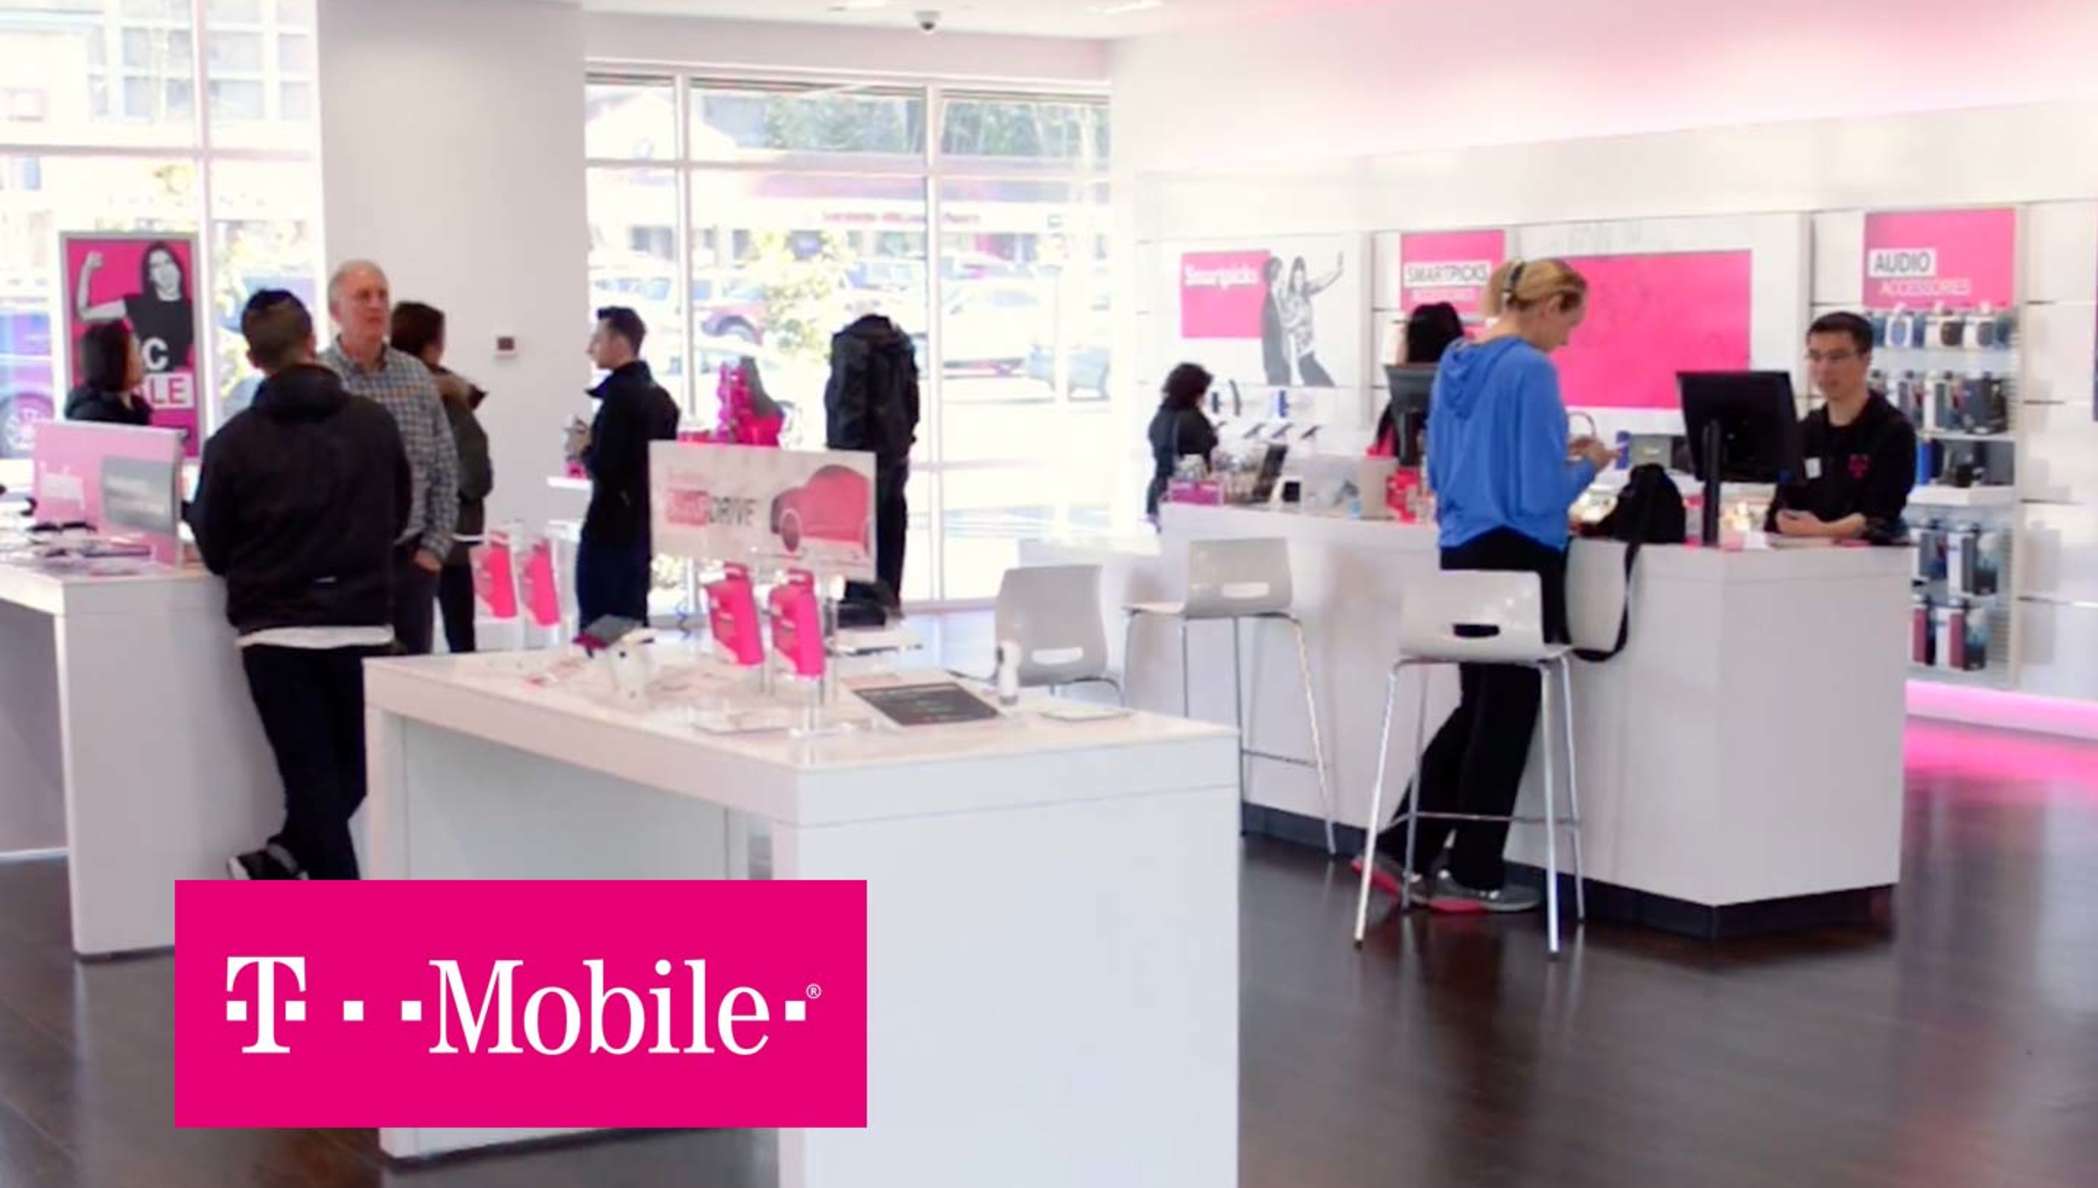 Tienda de T-Mobile con empleados que ayudan a sus clientes.